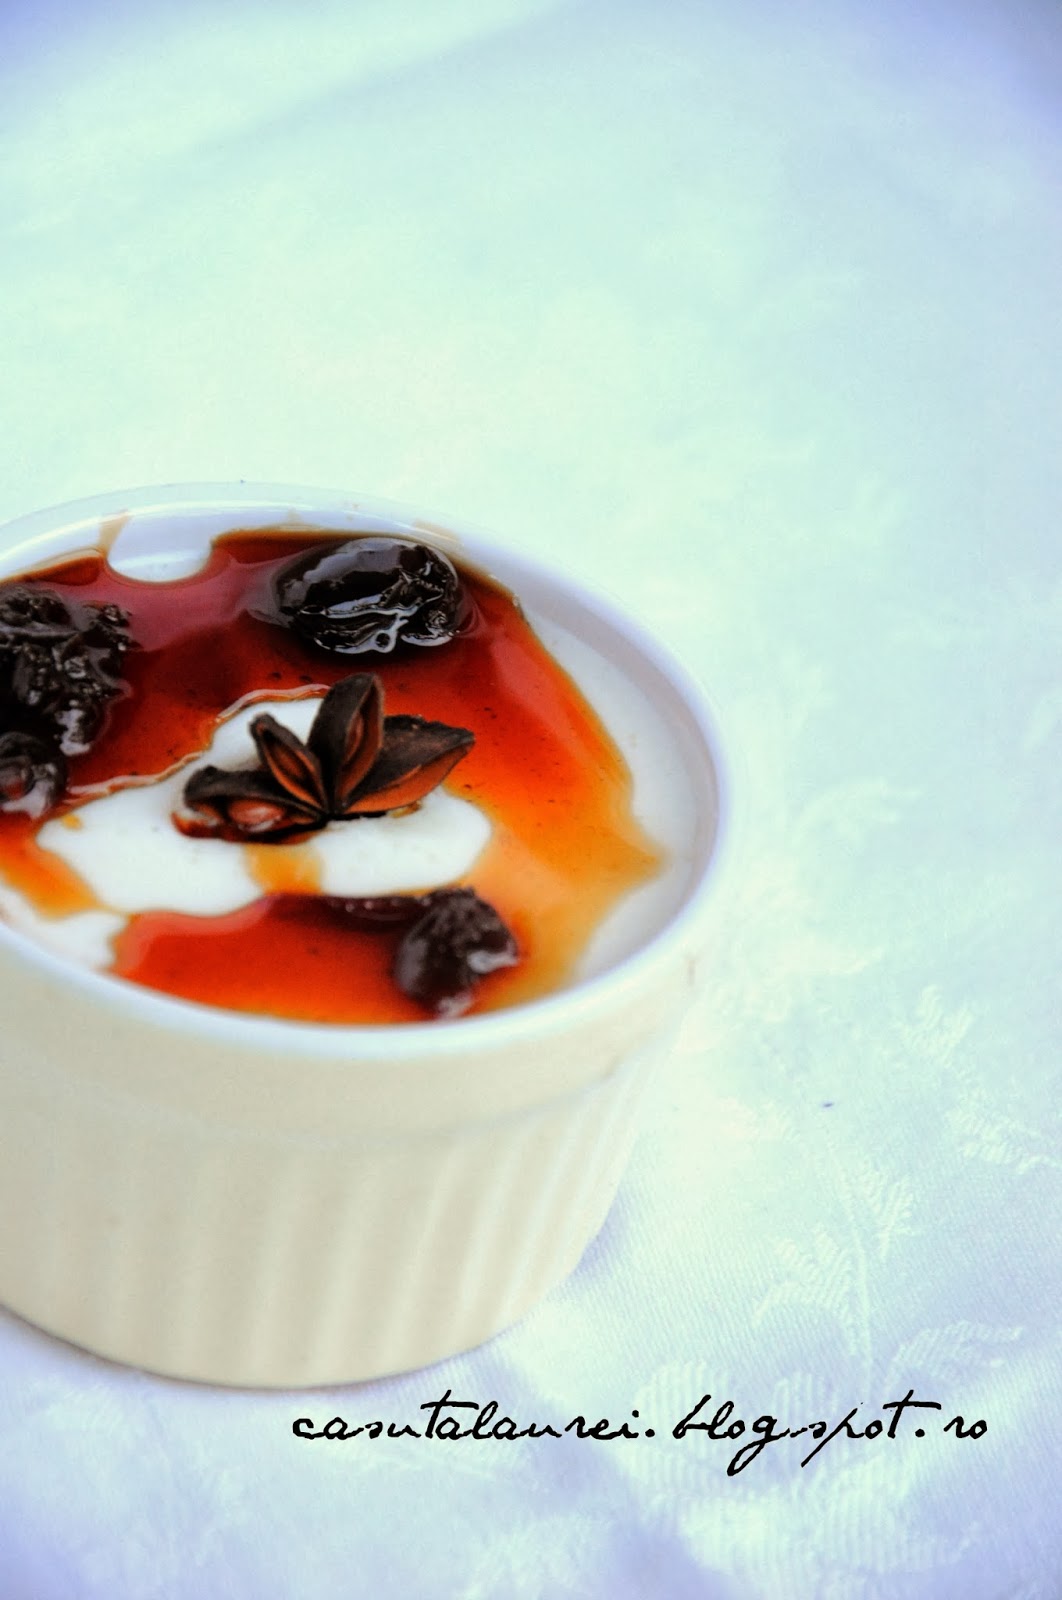 Culinariada primavaratica: crema de iaurt in sos de cirese